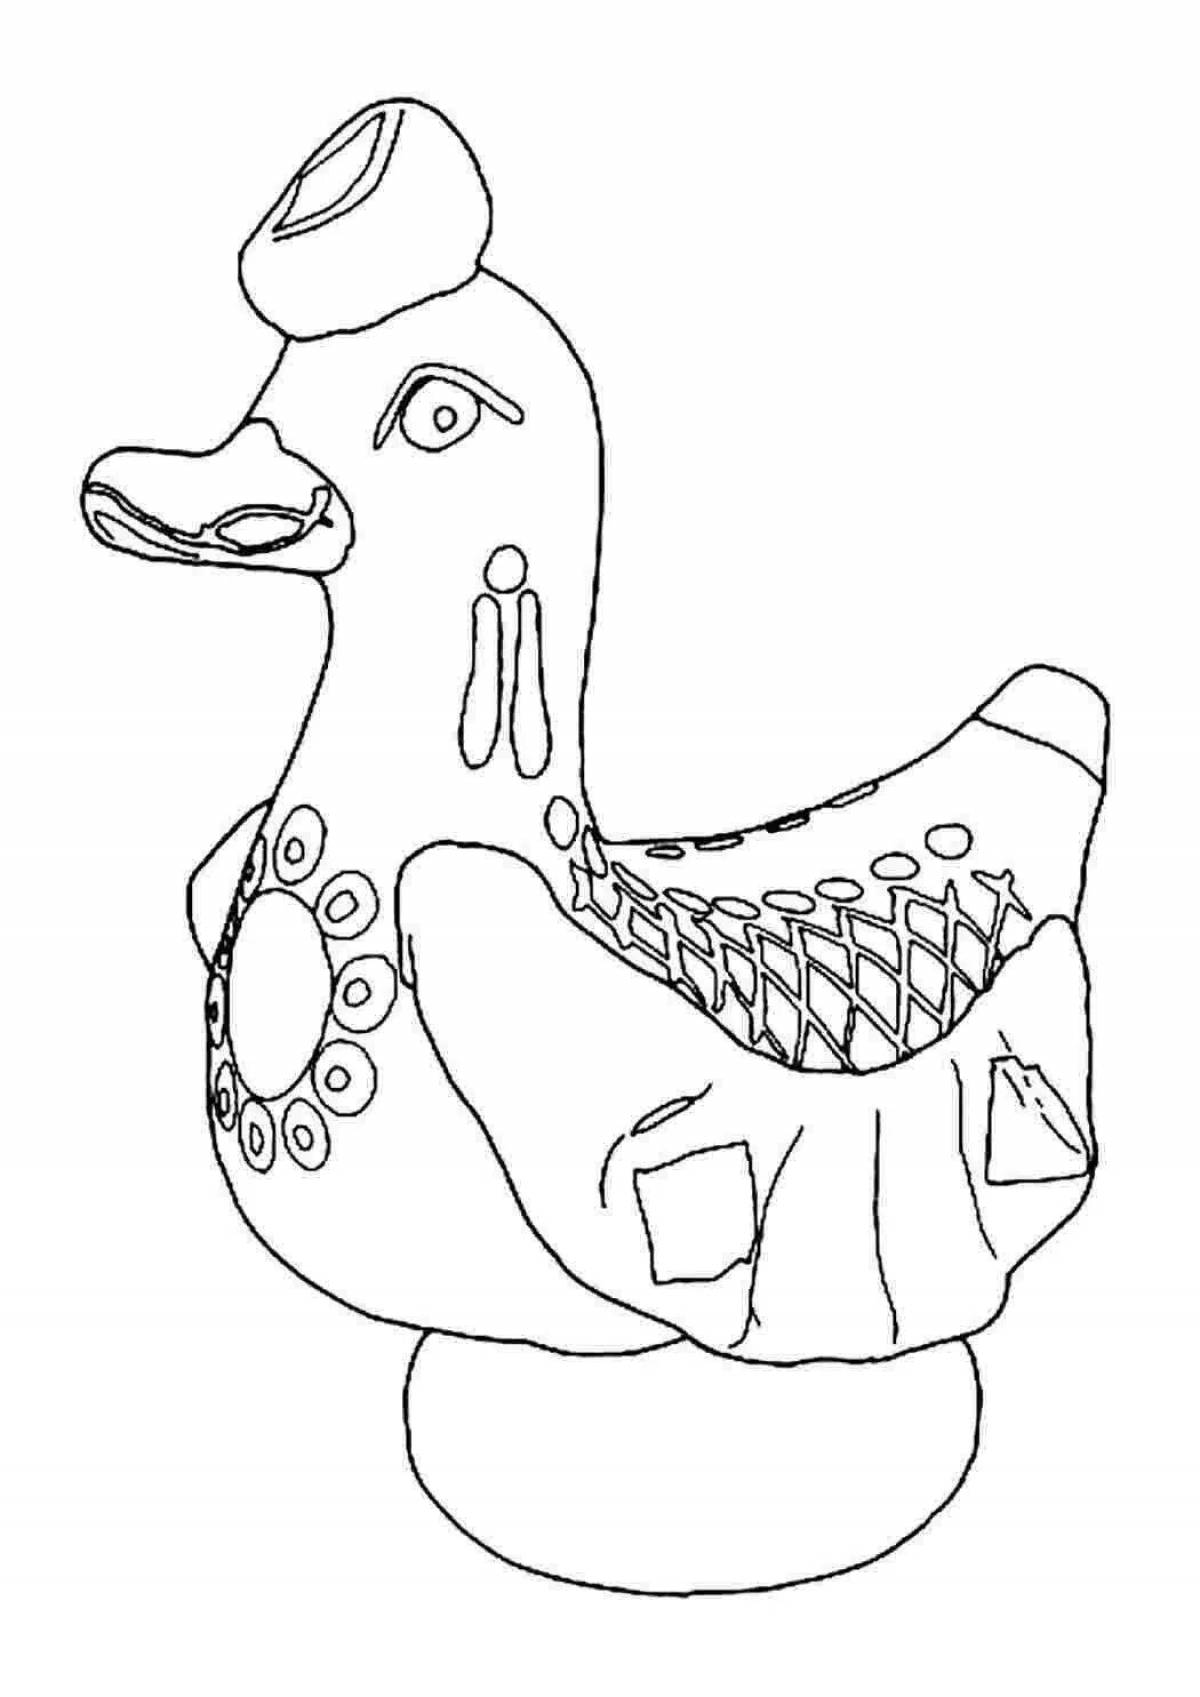 Веселая раскраска дымковская утка для детей младшего возраста